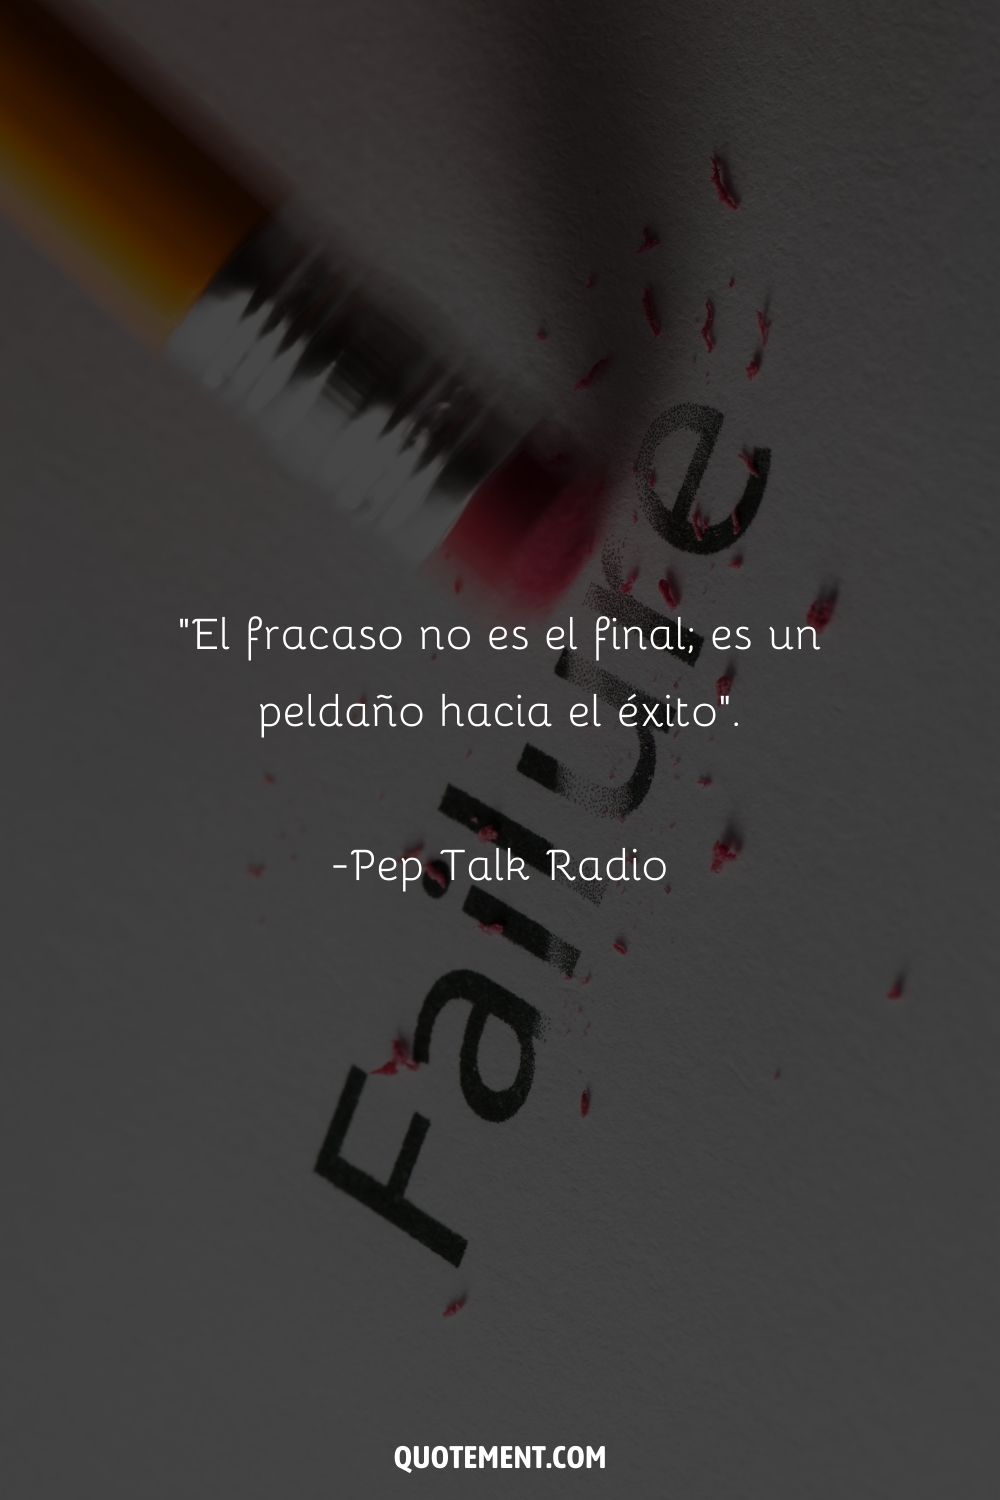 "El fracaso no es el final; es un peldaño hacia el éxito". - Pep Talk Radio